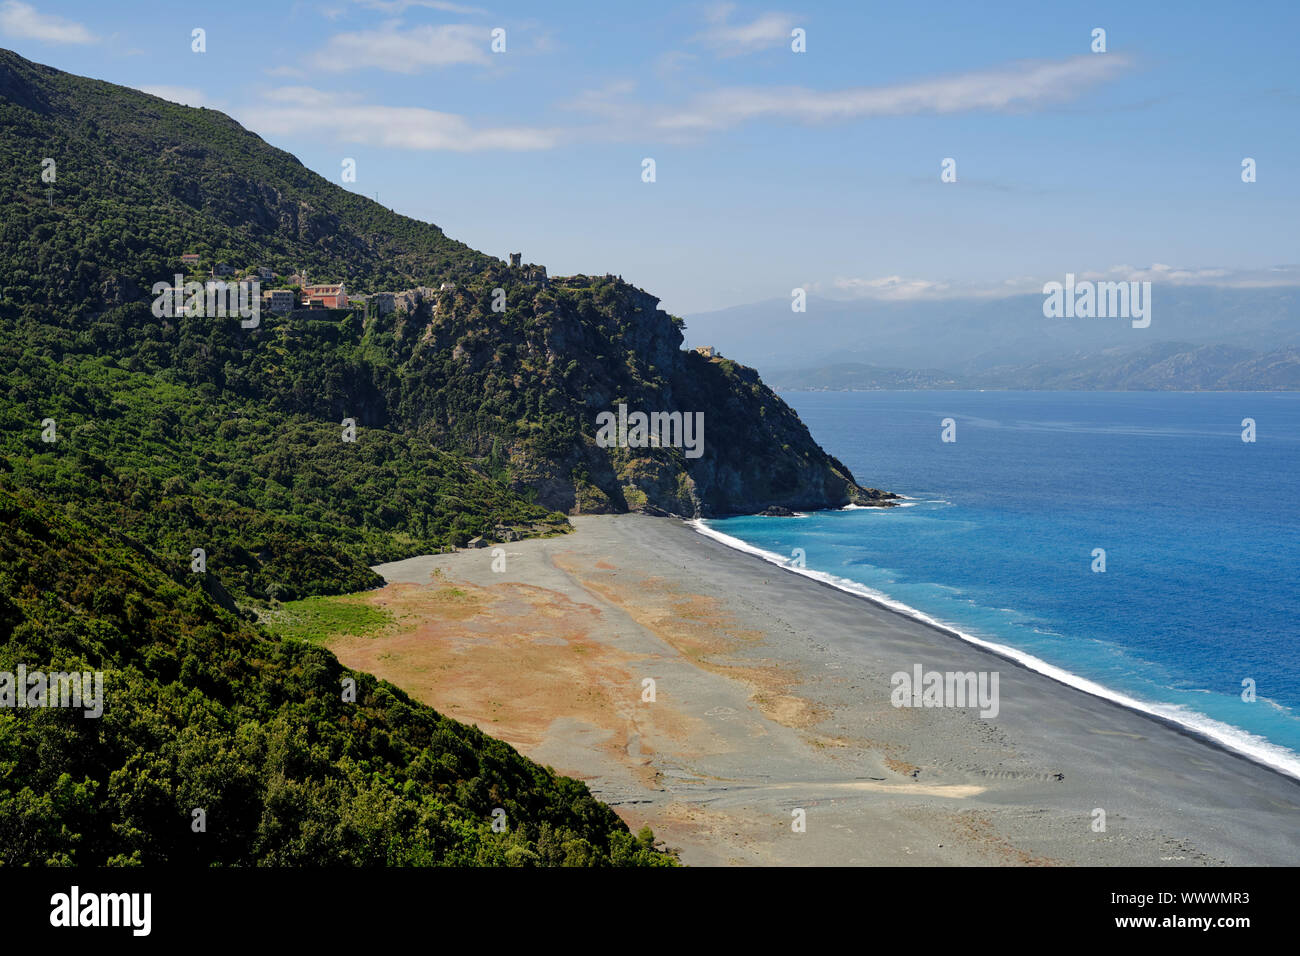 Nonza hilltop village and beach landscape in the Haute-Corse department Cap Corse north Corsica France. Stock Photo